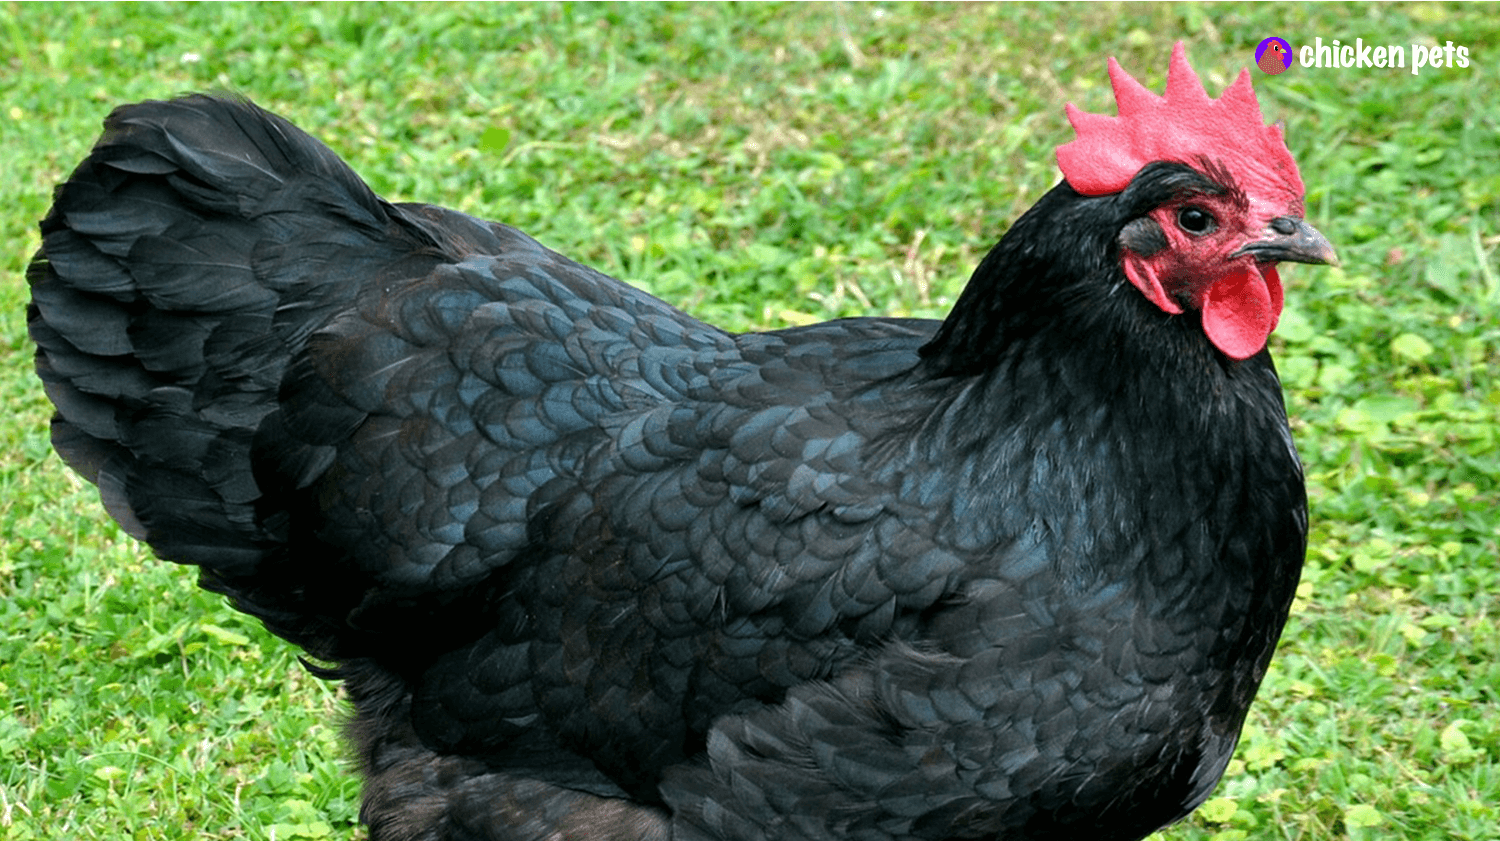 australorp chicken breed